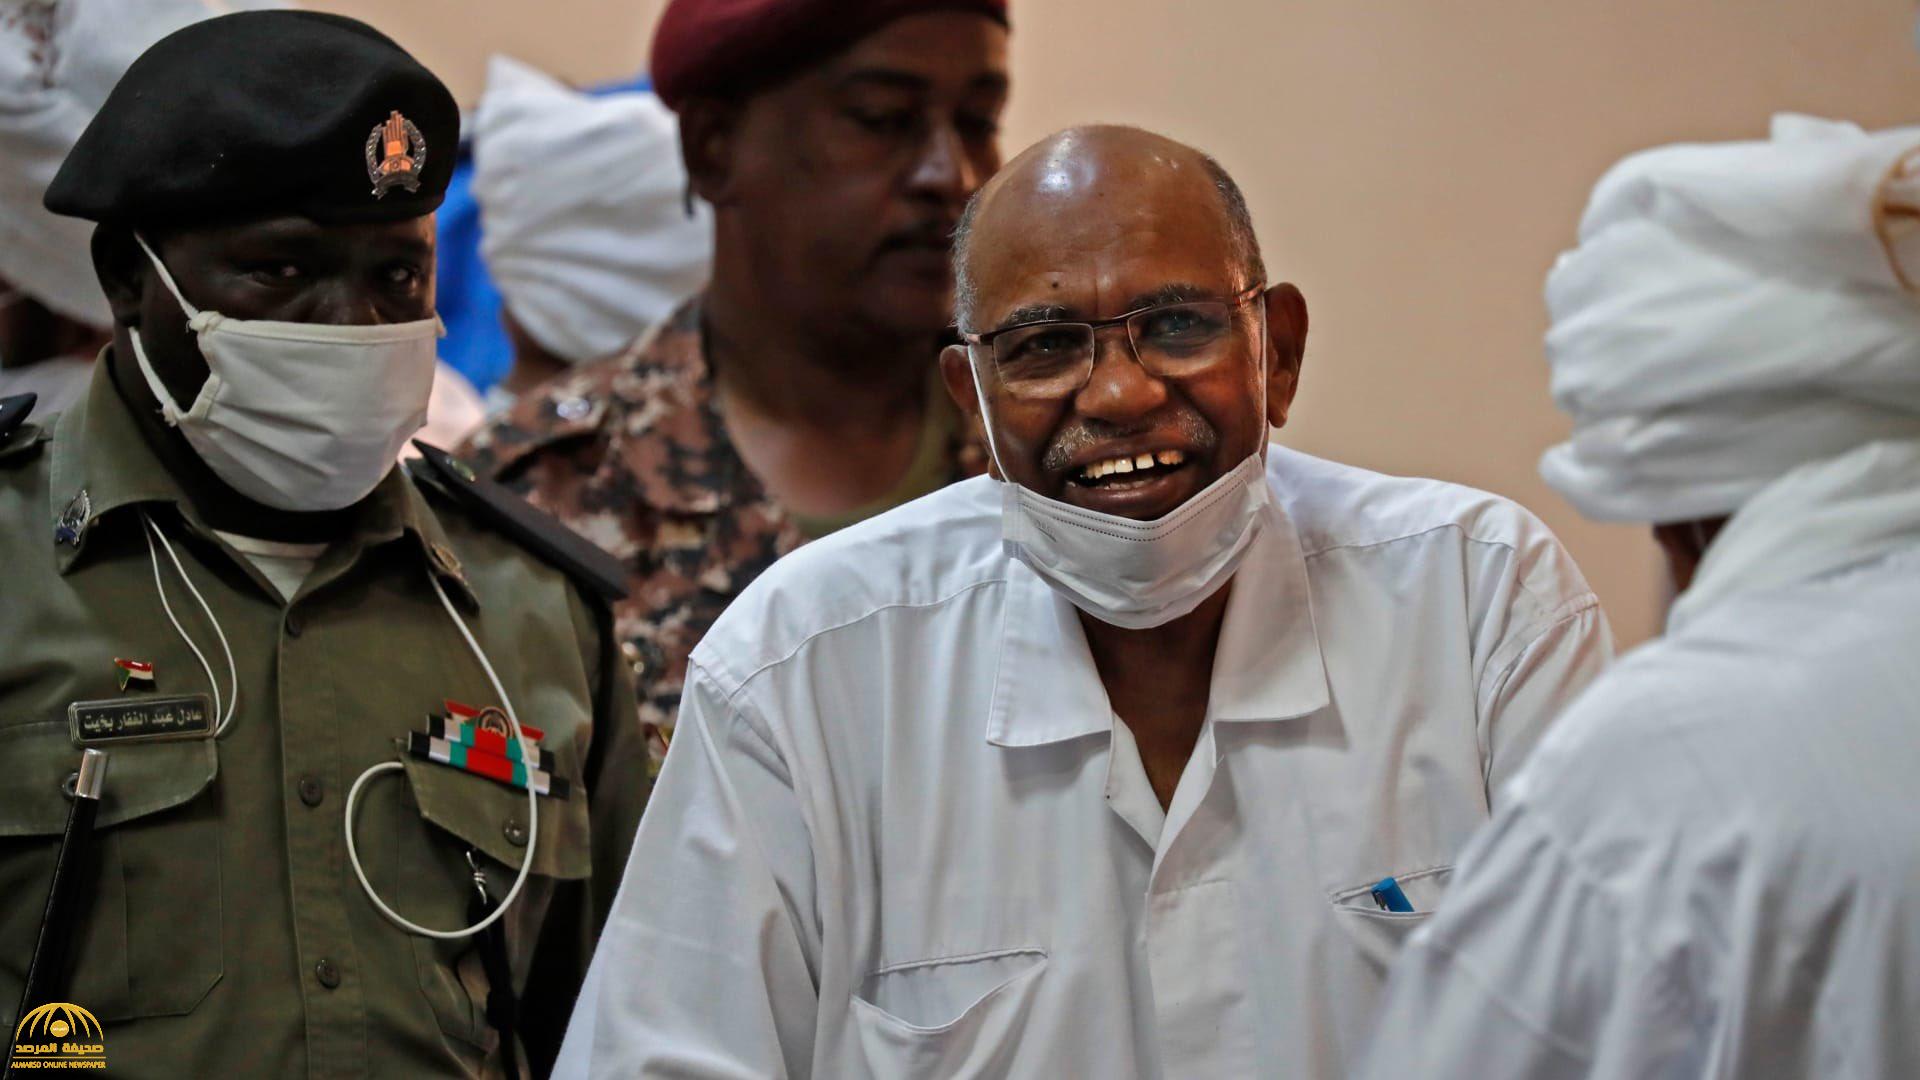 السودان يقرر تسليم عمر البشير ومطلوبين آخرين في ملف دارفور لـ"المحكمة الجنائية الدولية"